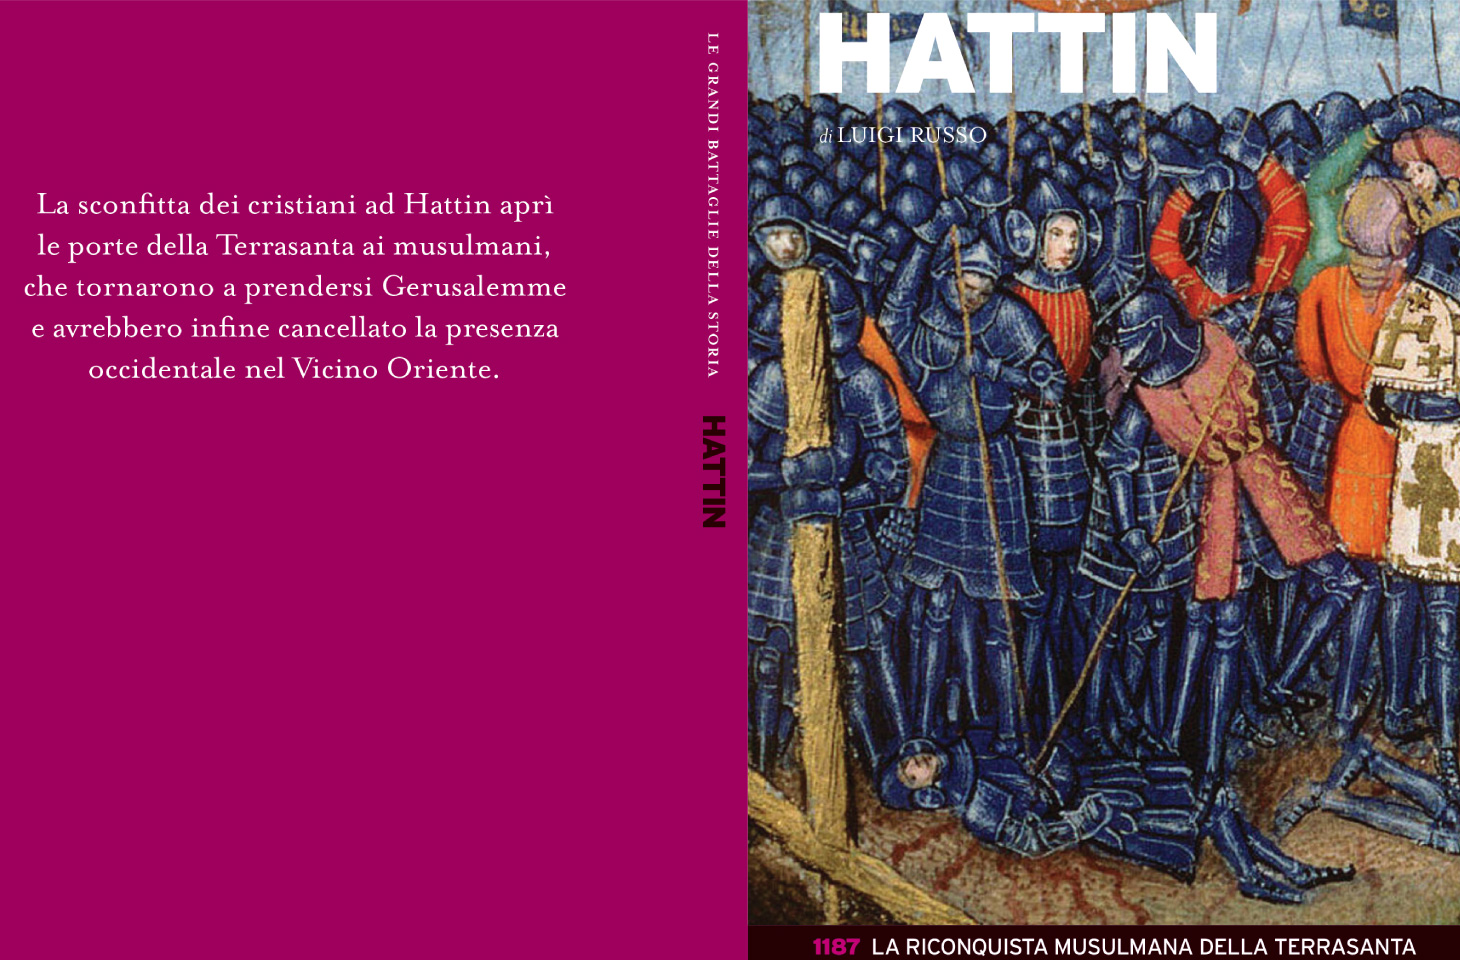 Il libro del prof. Luigi Russo sulla battaglia di Hattin